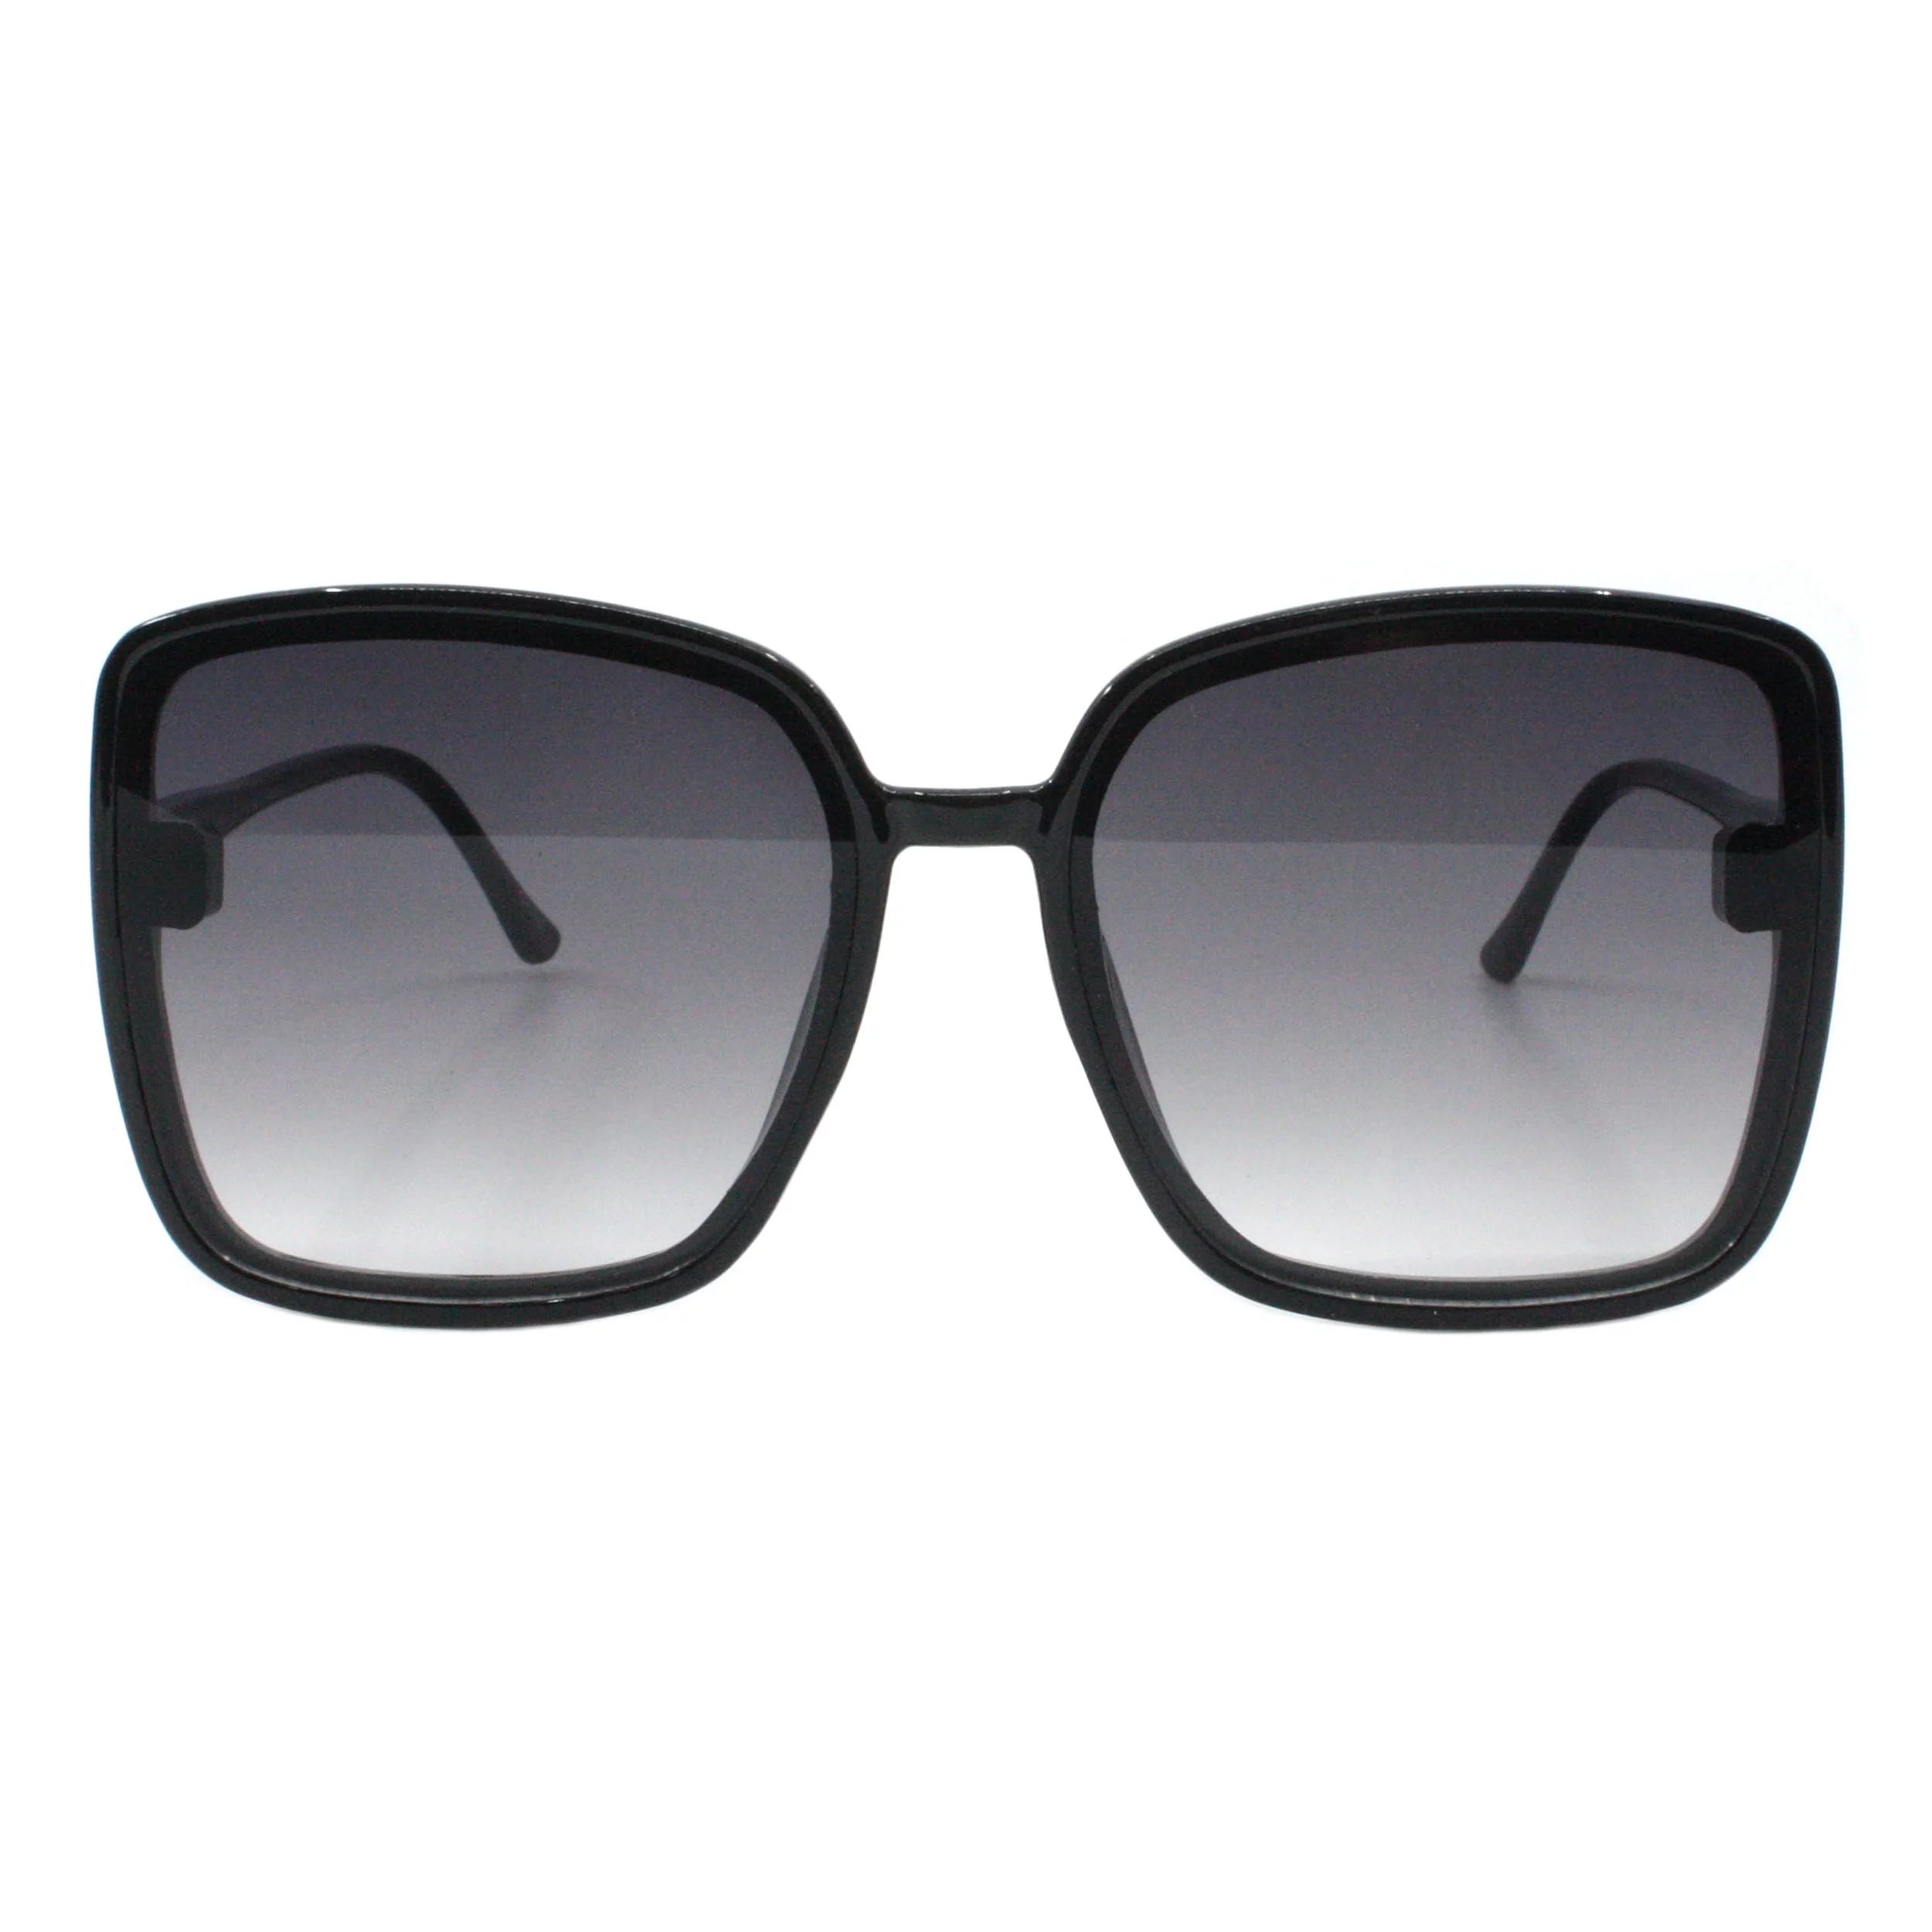 Womens Square Sunglasses Trendy Fashion Minimal Thin Frame UV 400 Black | Walmart (US)